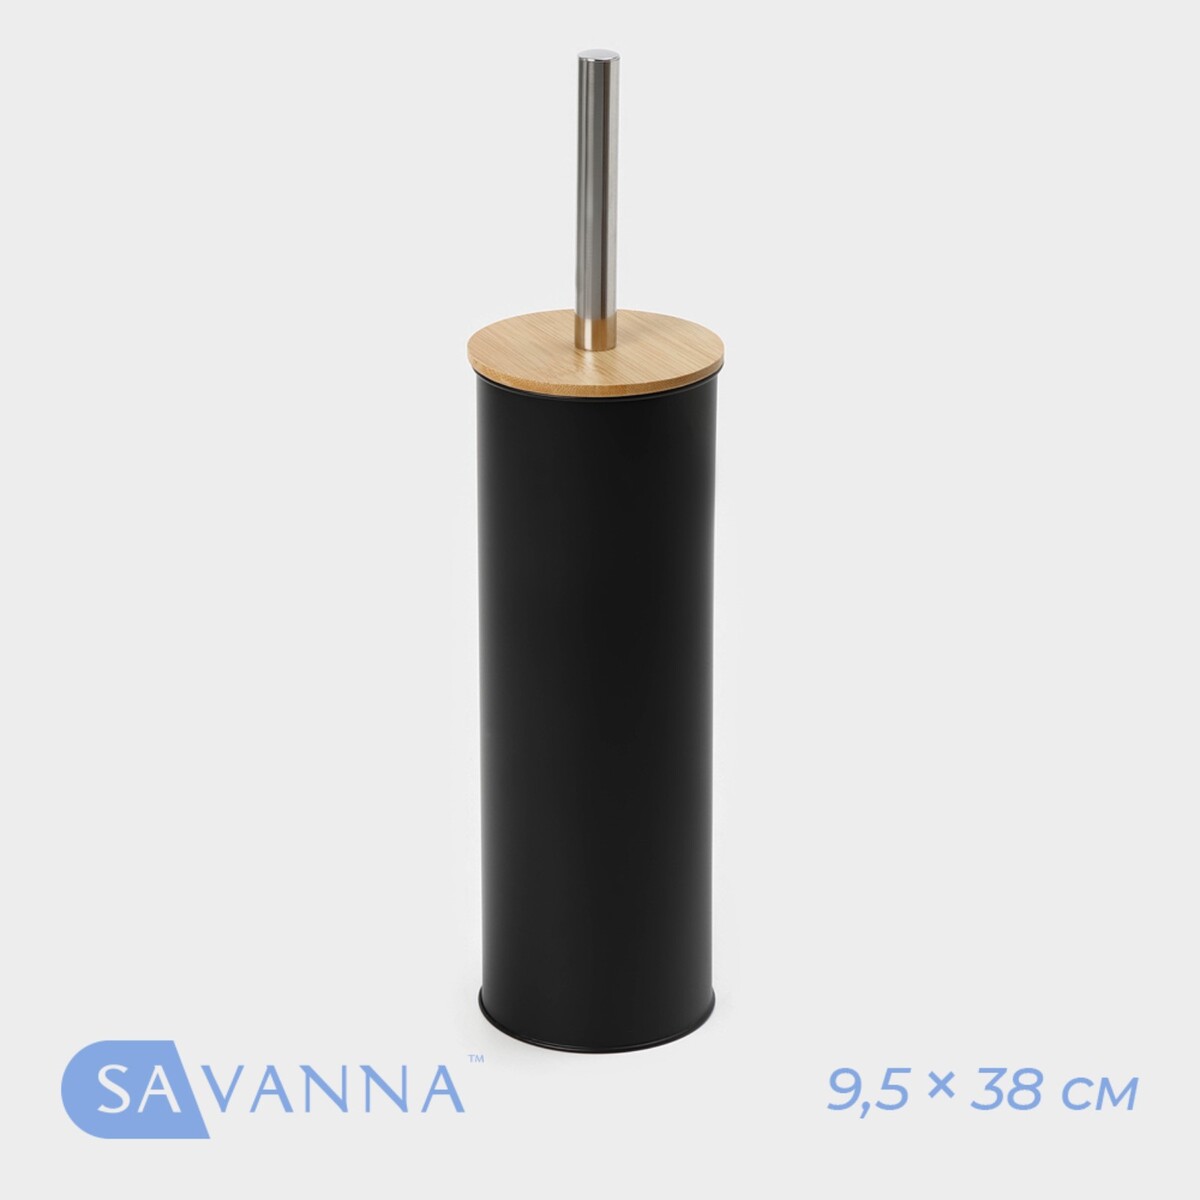 Ёрш для унитаза бамбуковый savanna bamboo, 9,5×38 см, цвет черный ершик для унитаза unigood нержавеющая сталь подставка 1шт сменная насадка бирюзовый